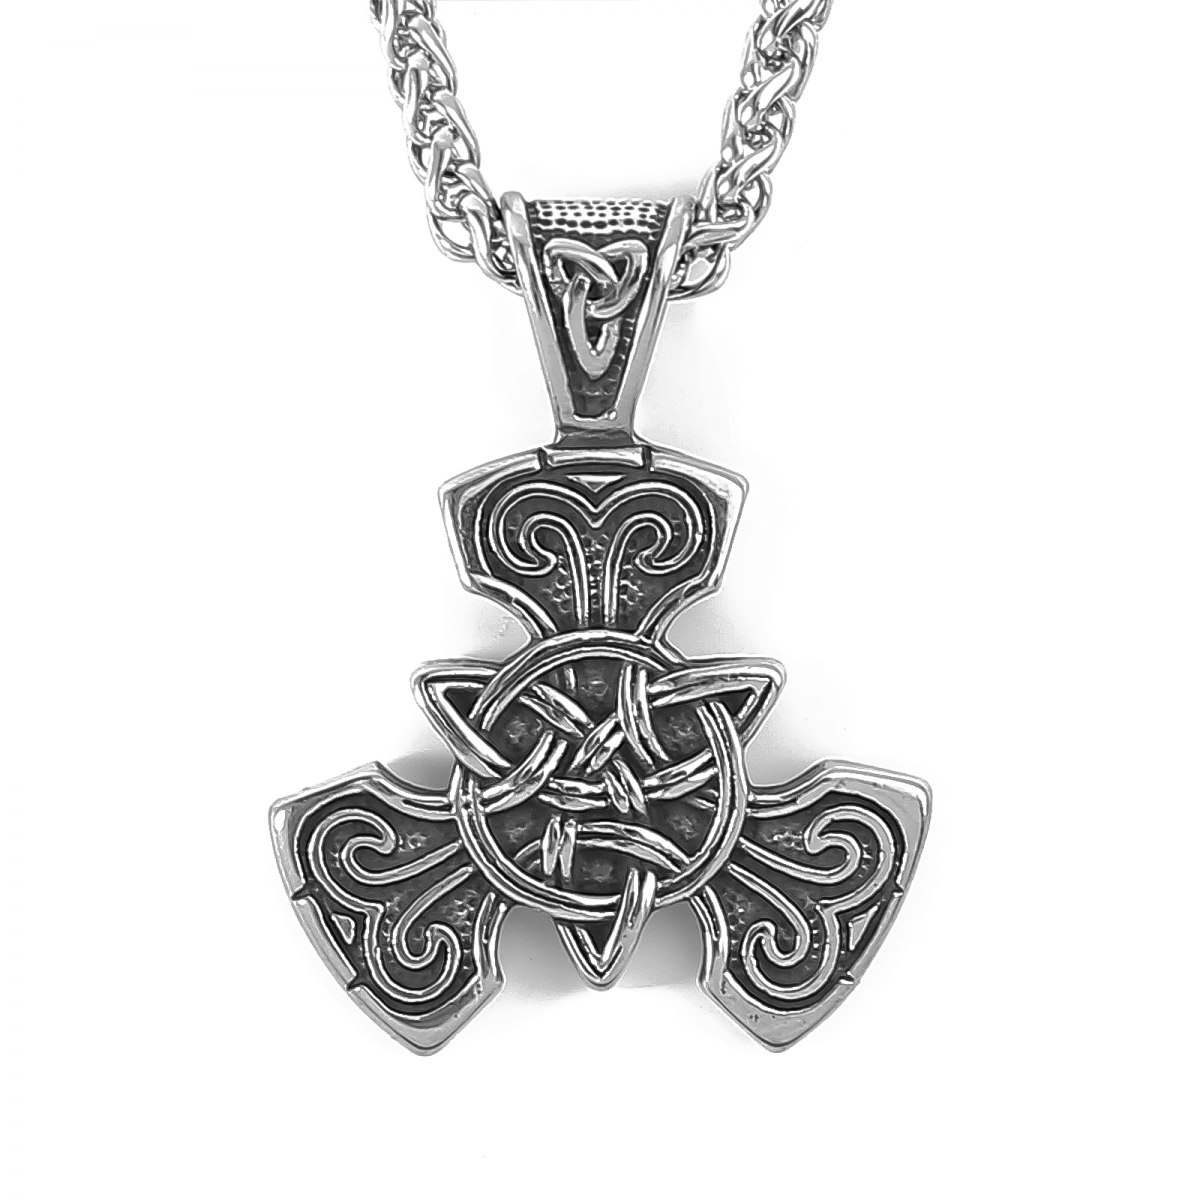 Keltisk knute kors